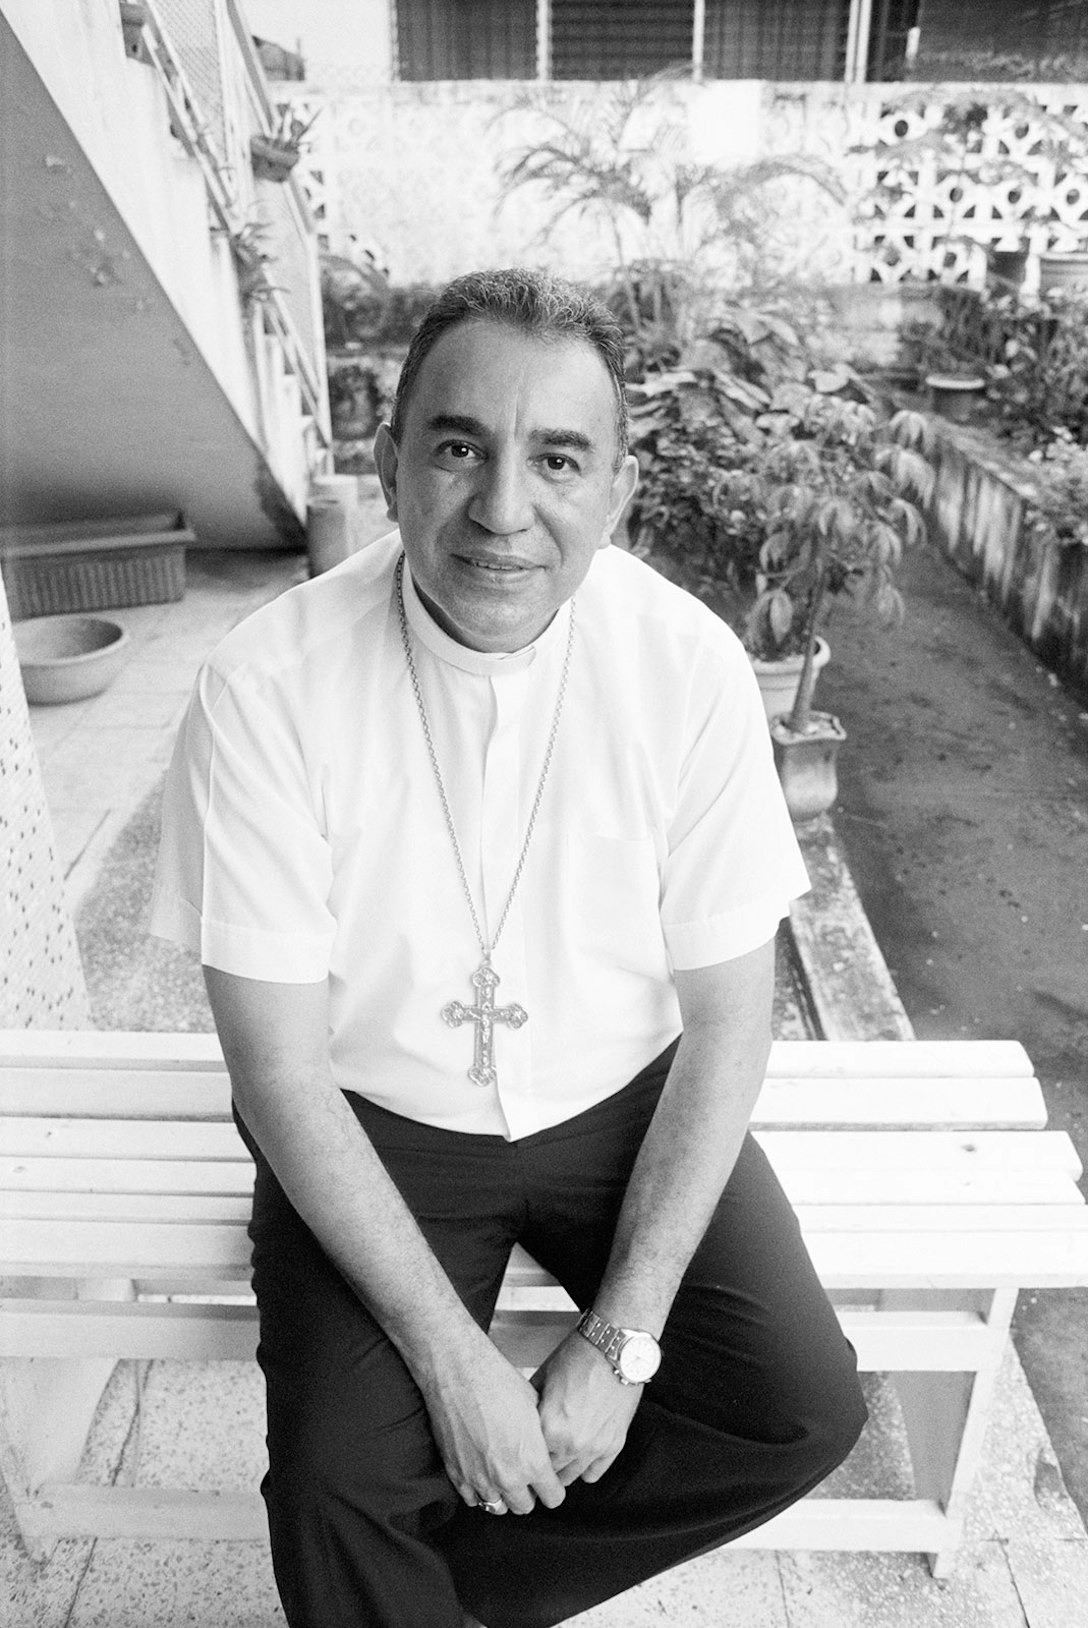 A photo of Archbishop José Domingo Ulloa Mendieta